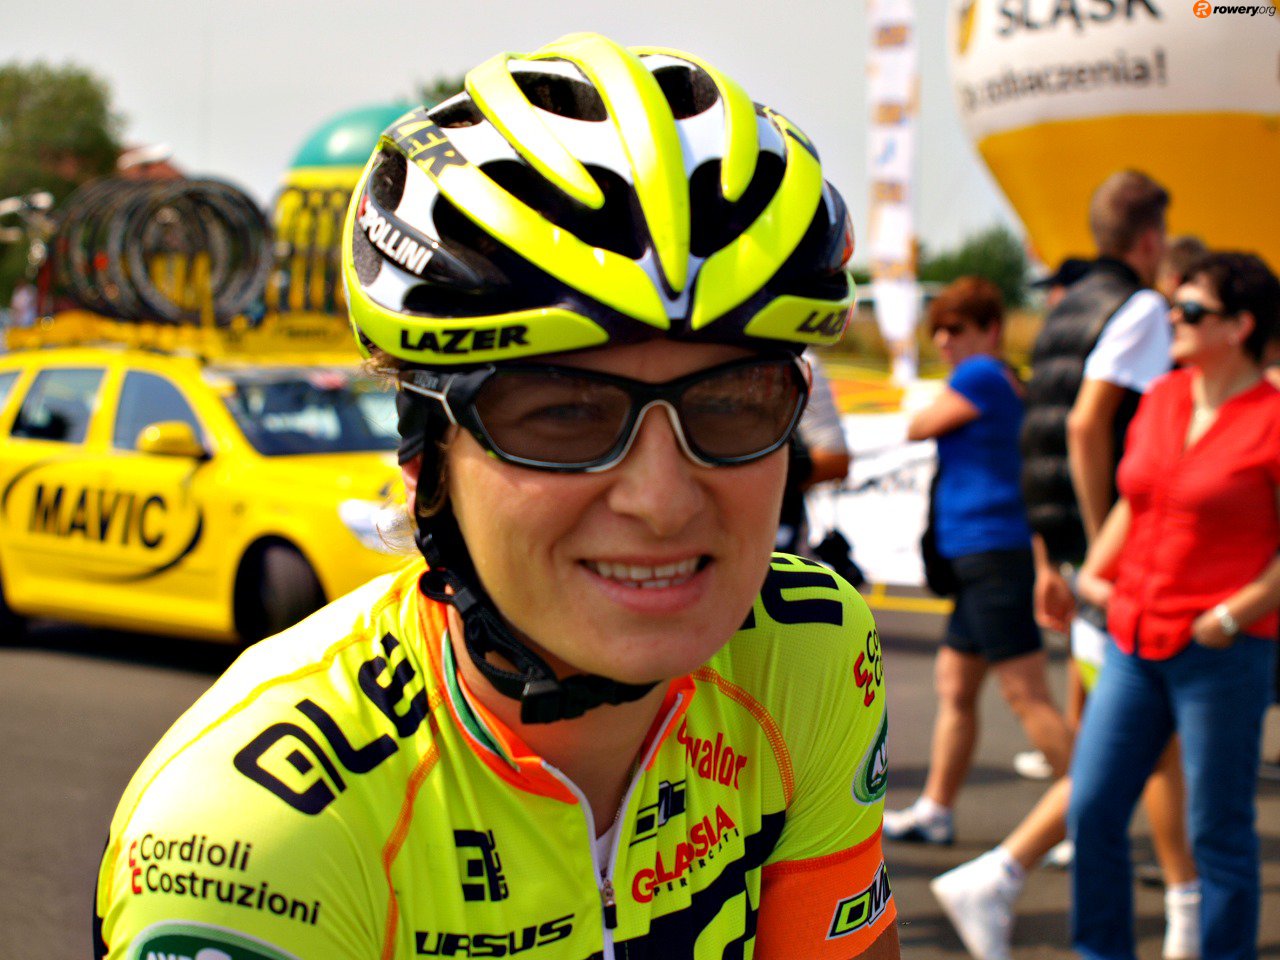 Premondiale Giro della Toscana 2014: Małgorzata Jasińska wygrywa na zakończenie